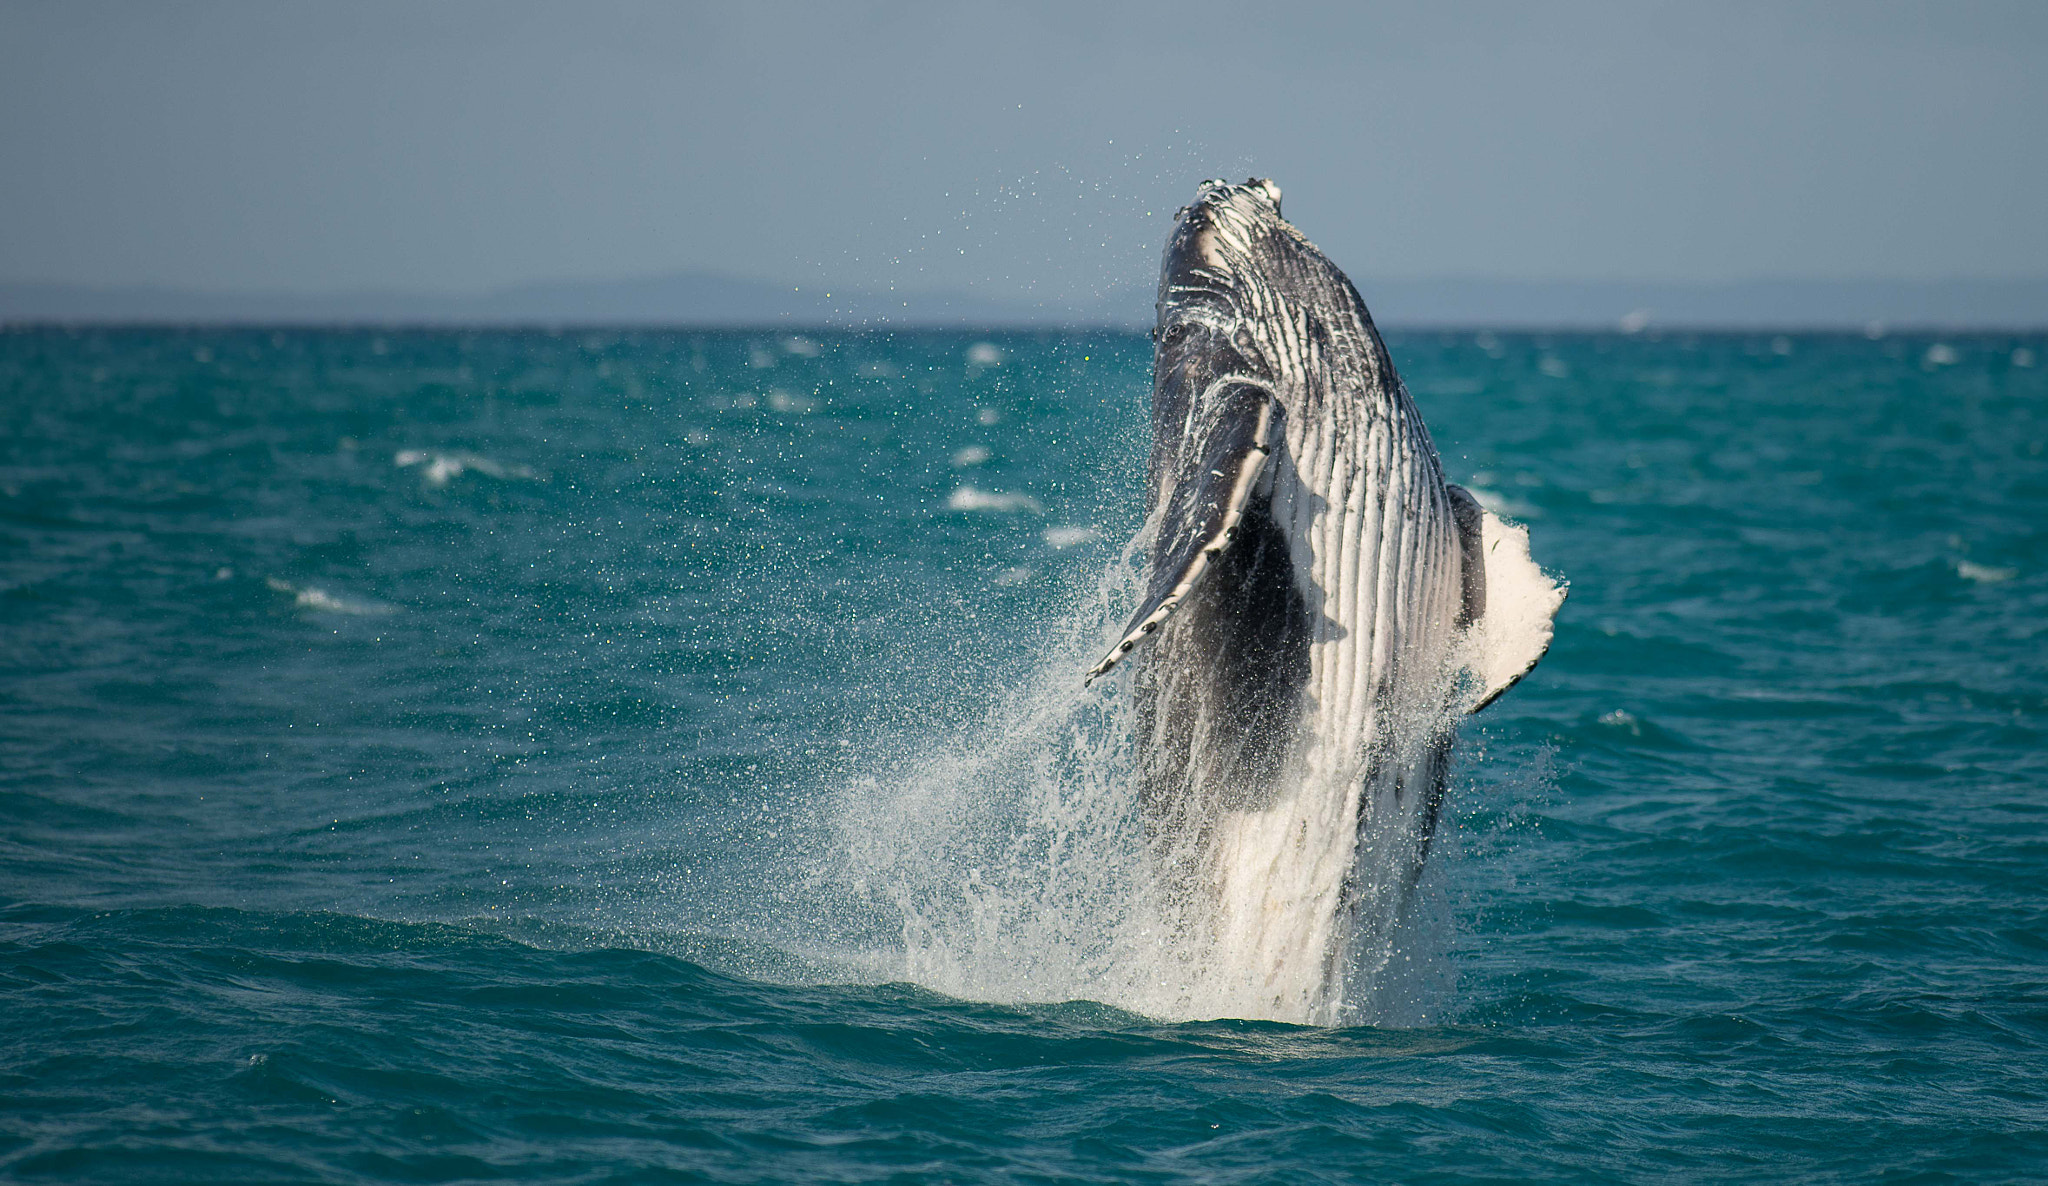 Tokina AT-X 304 AF (AF 300mm f/4.0) sample photo. Whales at hervey bay australia photography